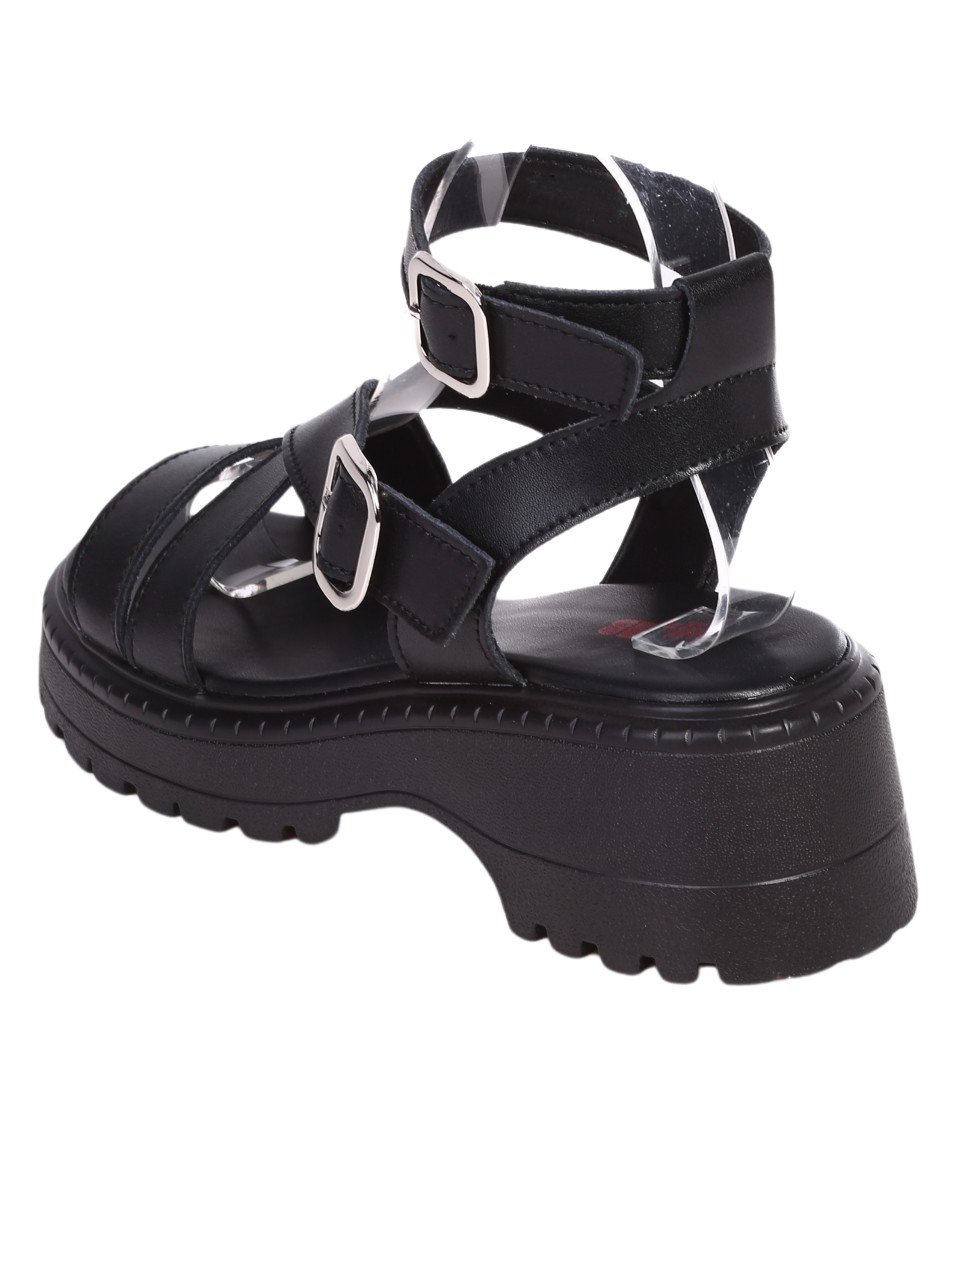 Ежедневни дамски сандали от естествена кожа в черно 4AF-24162 black